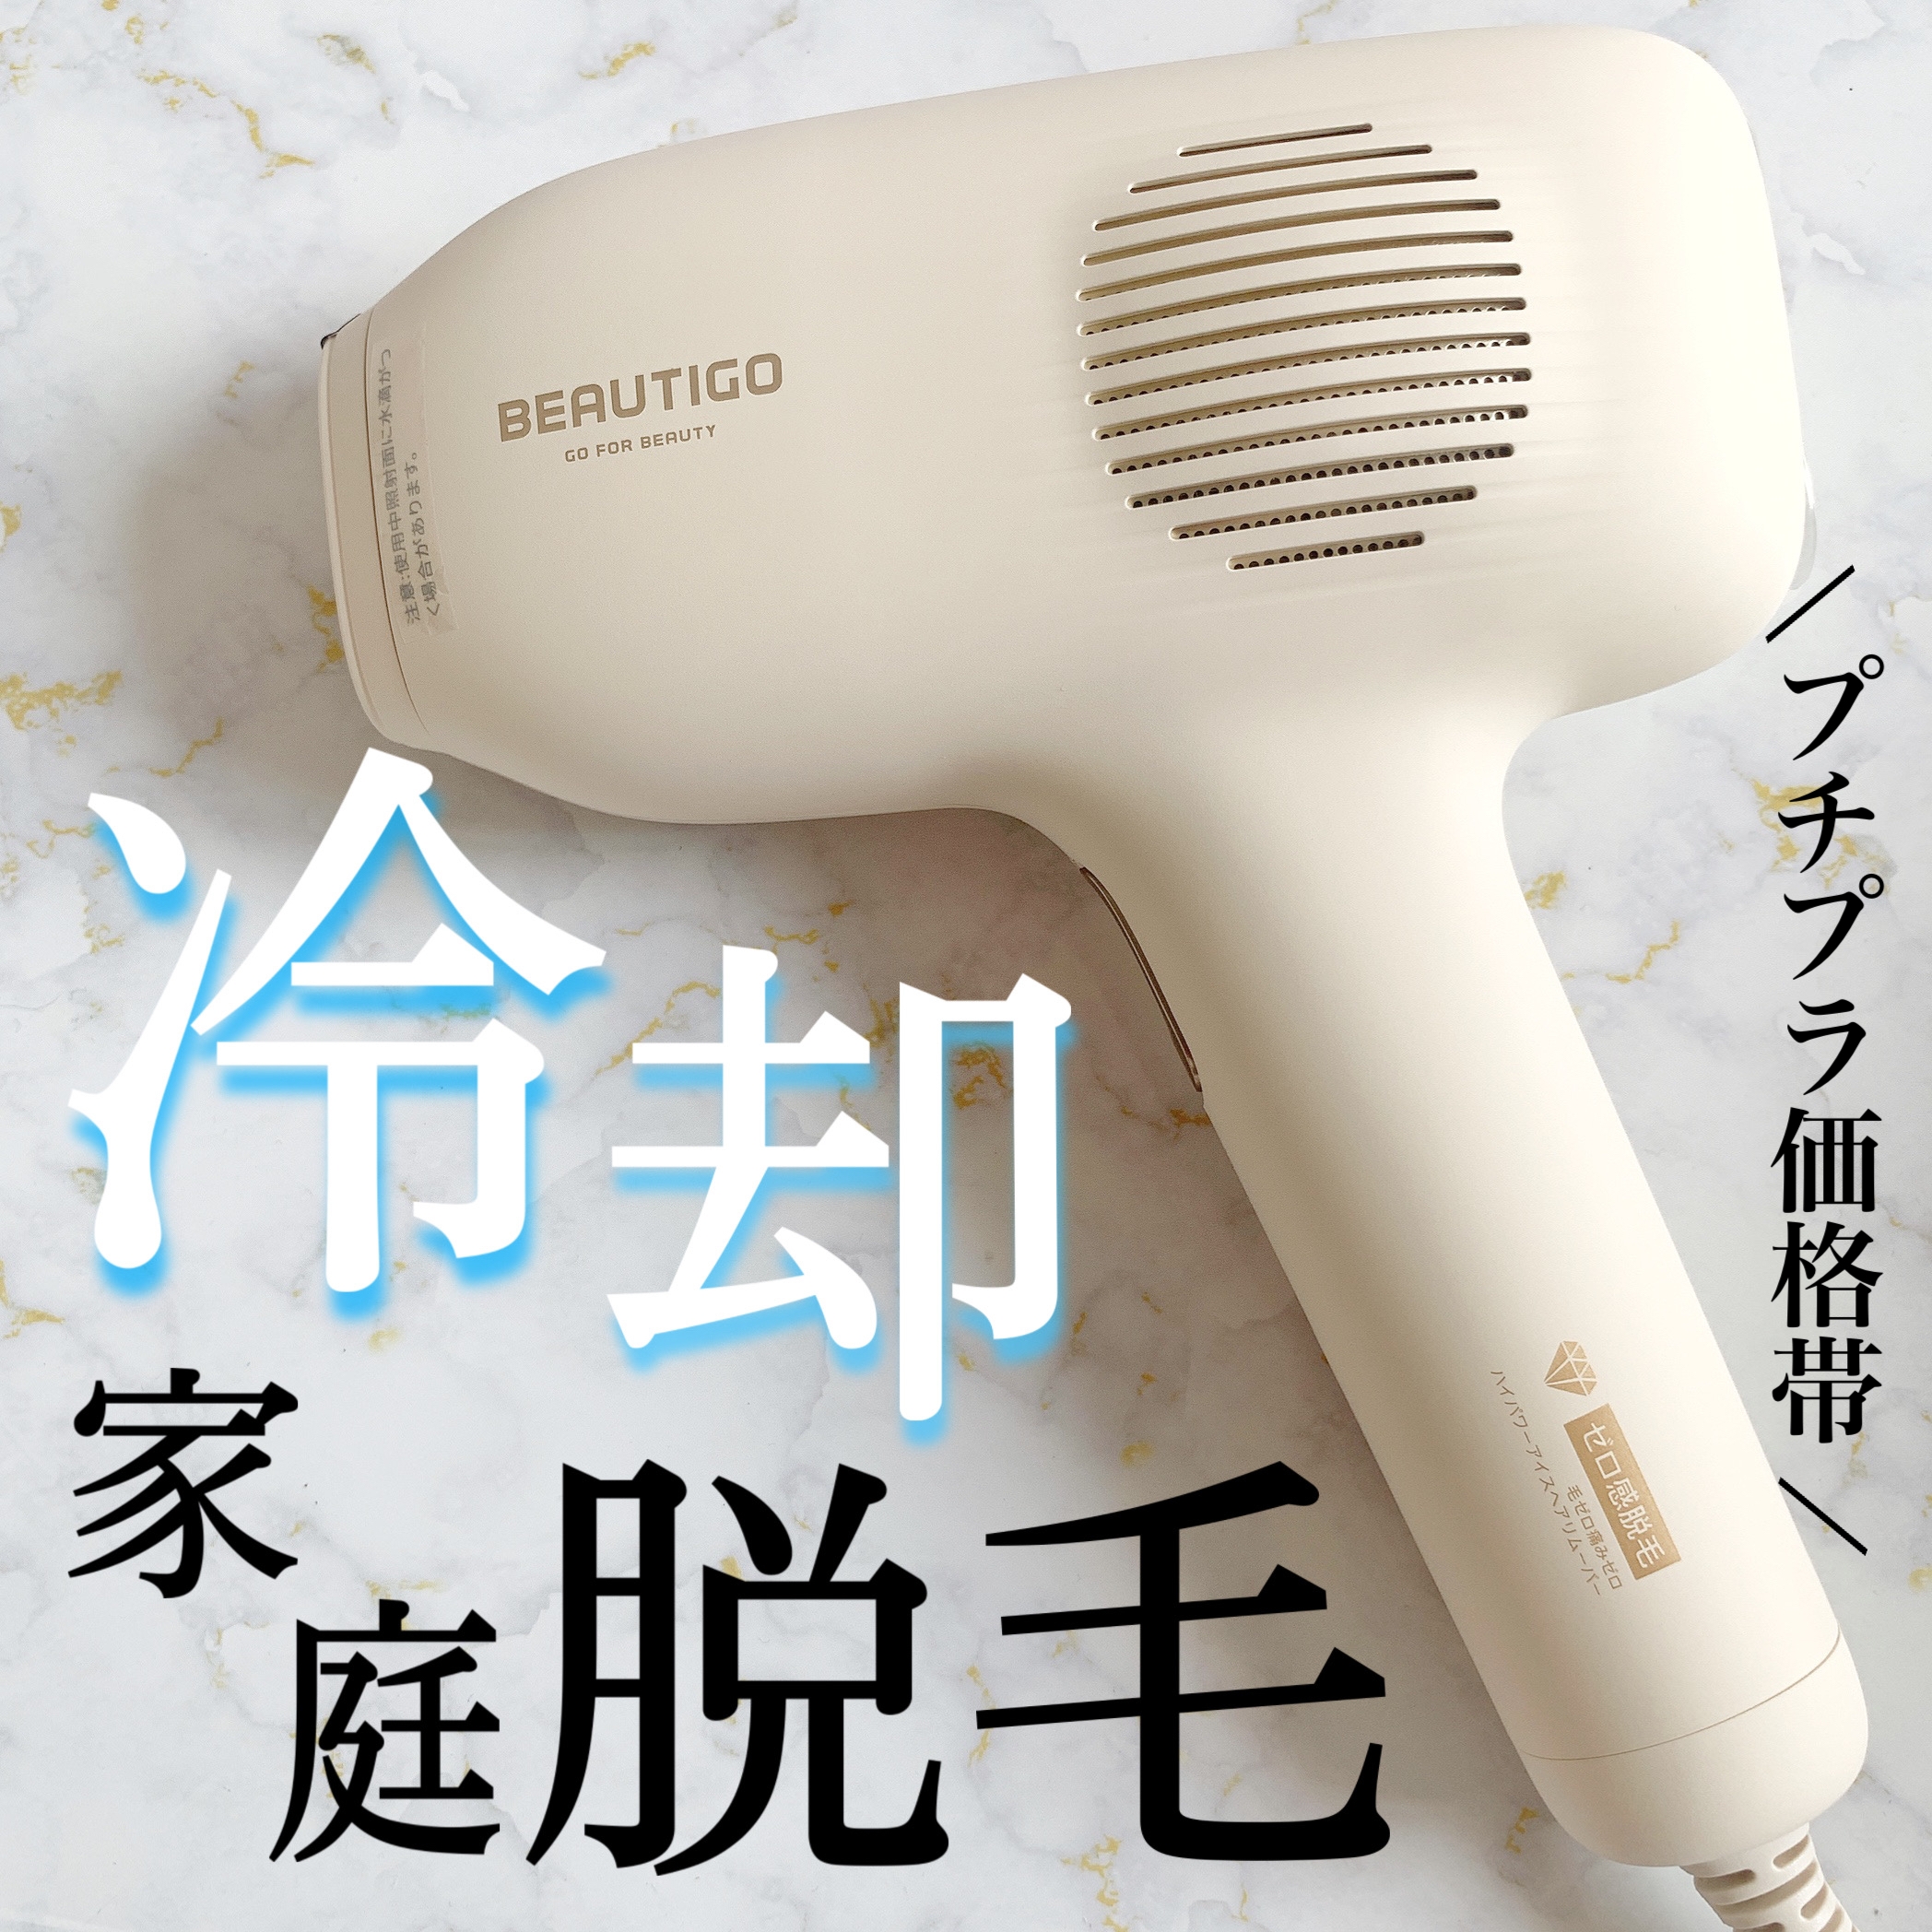 beautigo 脱毛器 美容/健康 美容機器 美容/健康 美容機器 【限定価格 